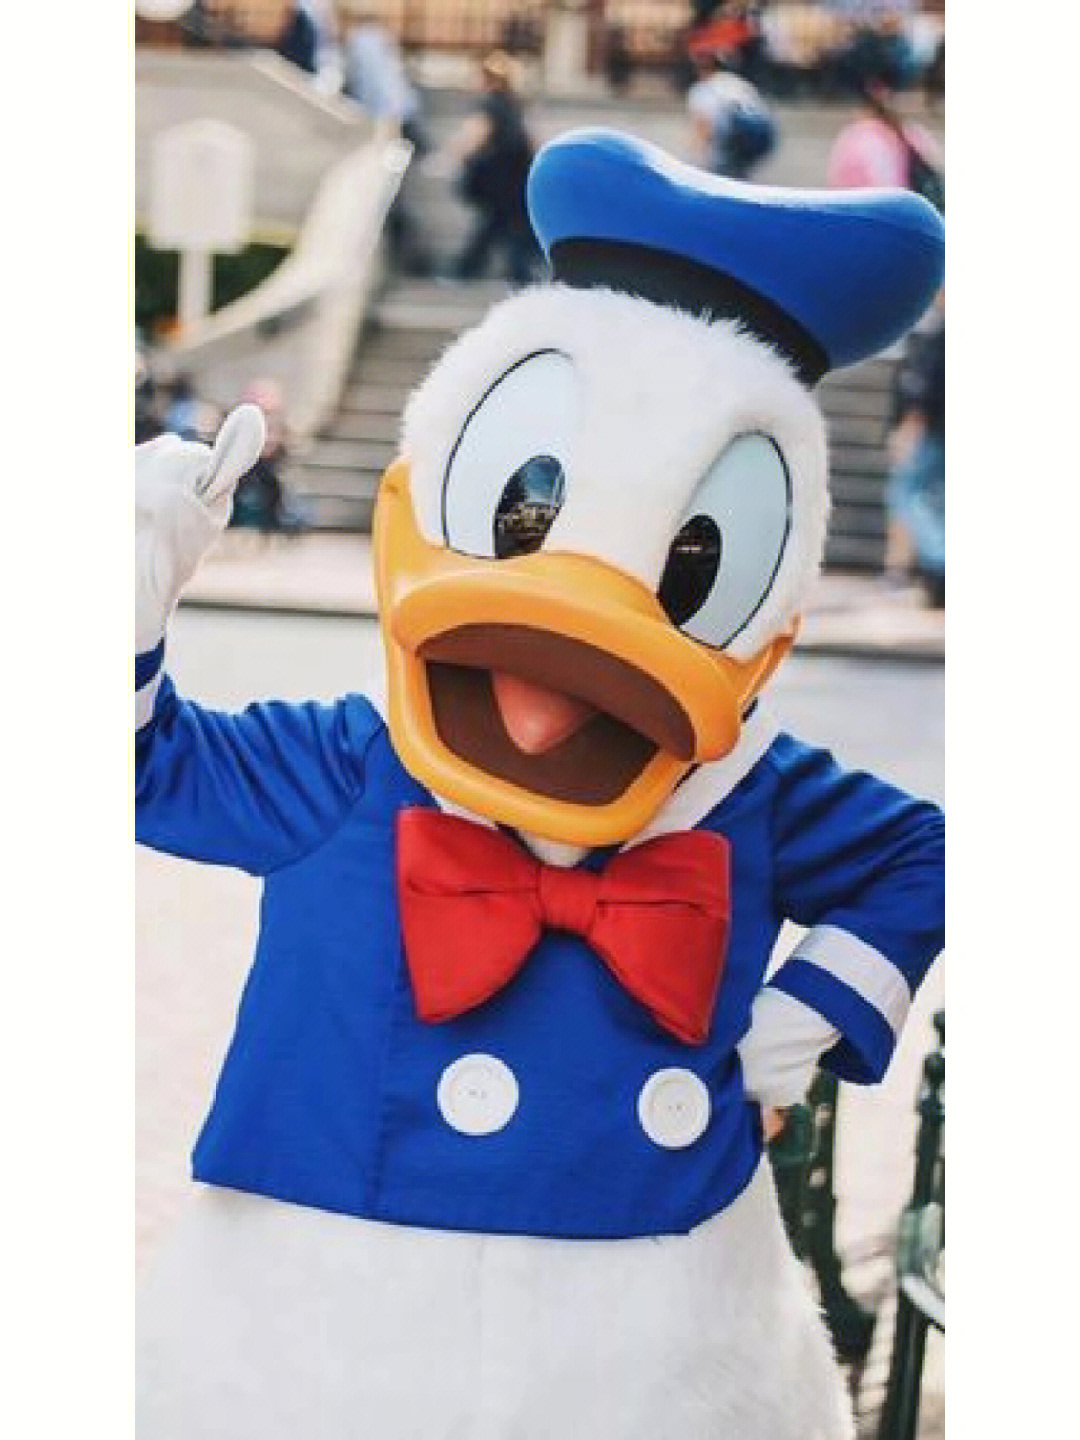 华特迪士尼创造出来一个呆萌,以蓝色水手服,水手帽为特色的鸭子